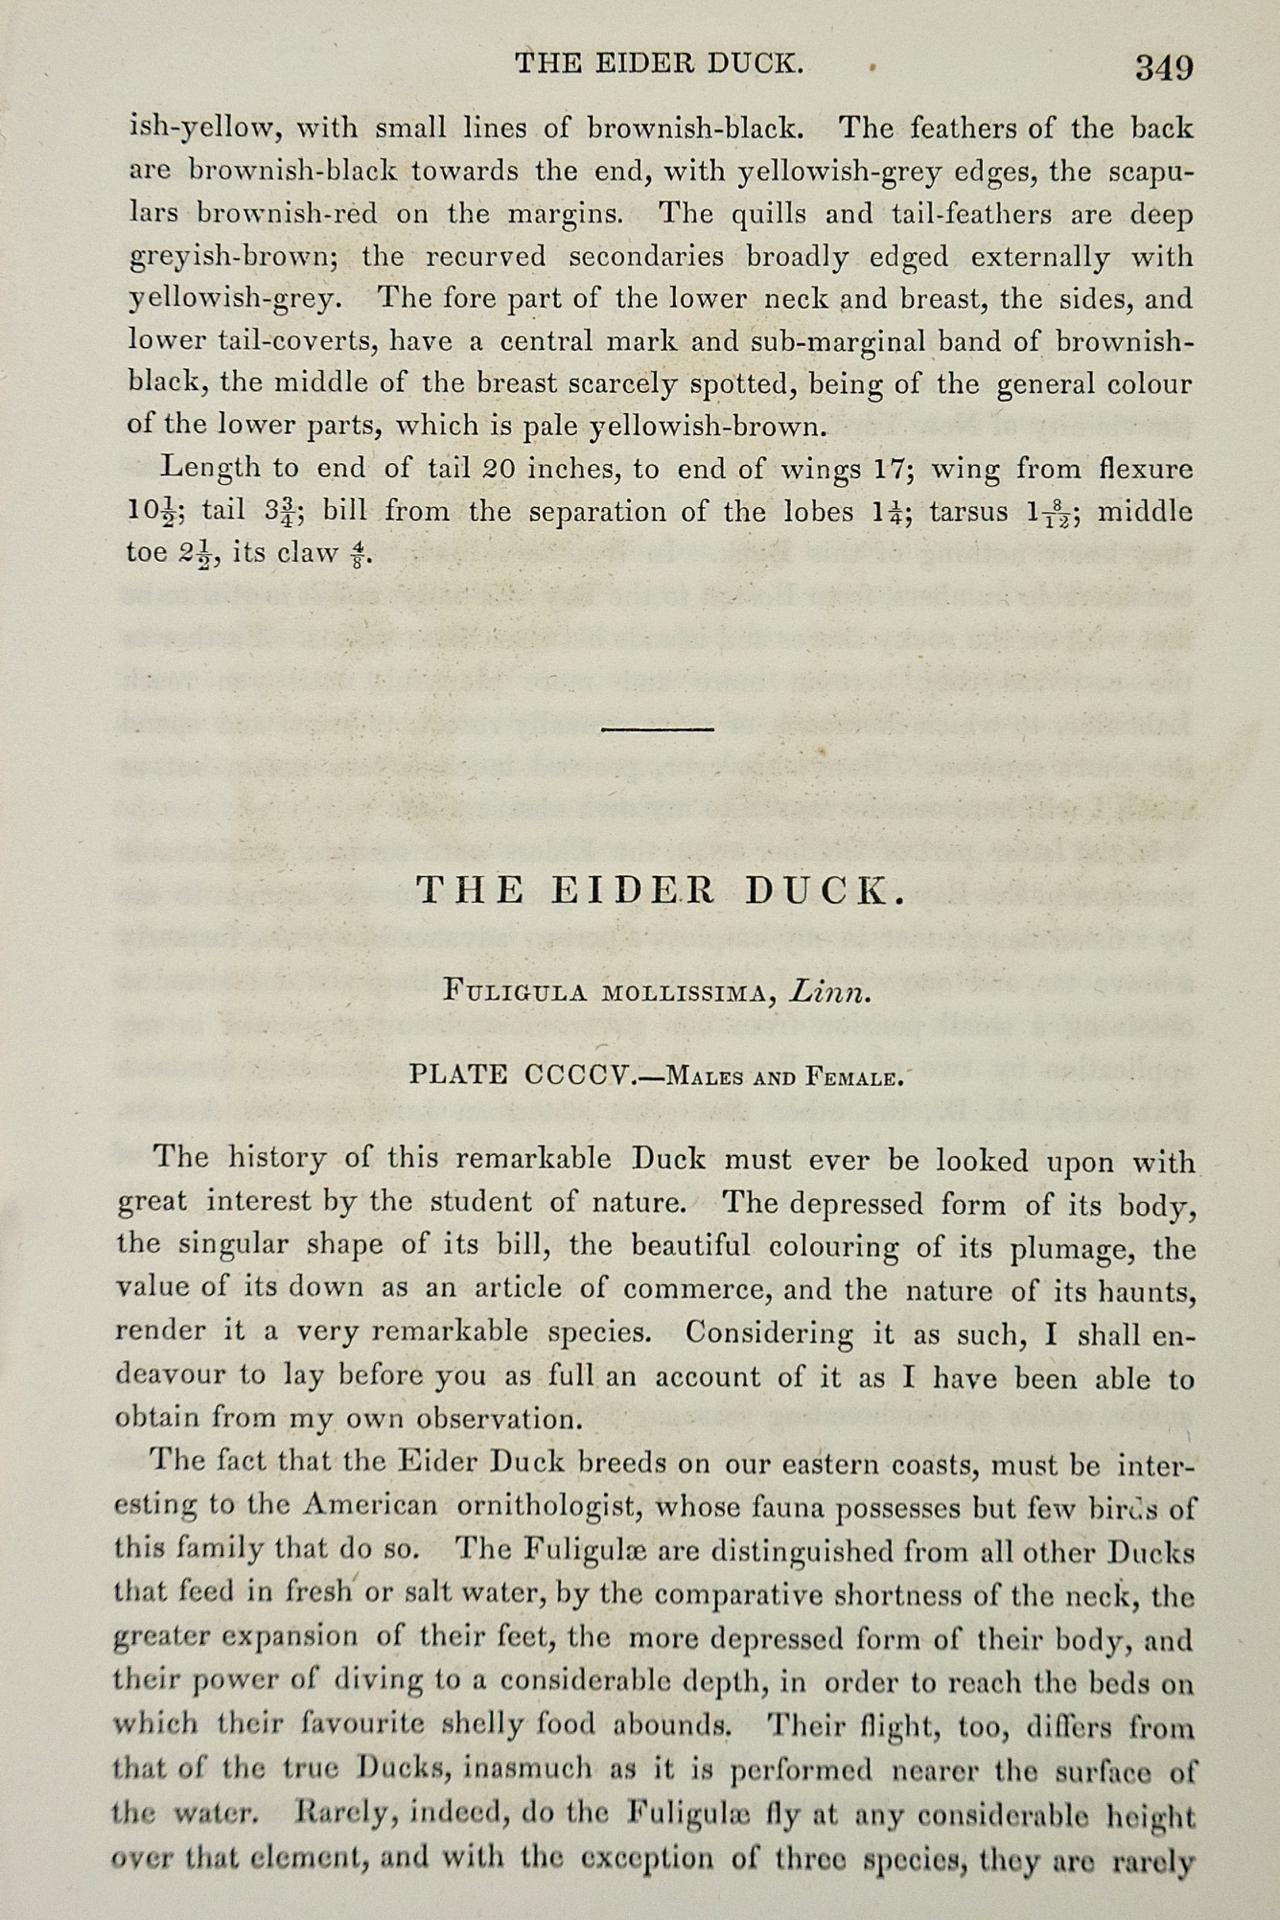 Eider Duck: an Original 1st Edition Hand Colored Audubon Bird Lithograph - Beige Animal Print by John James Audubon